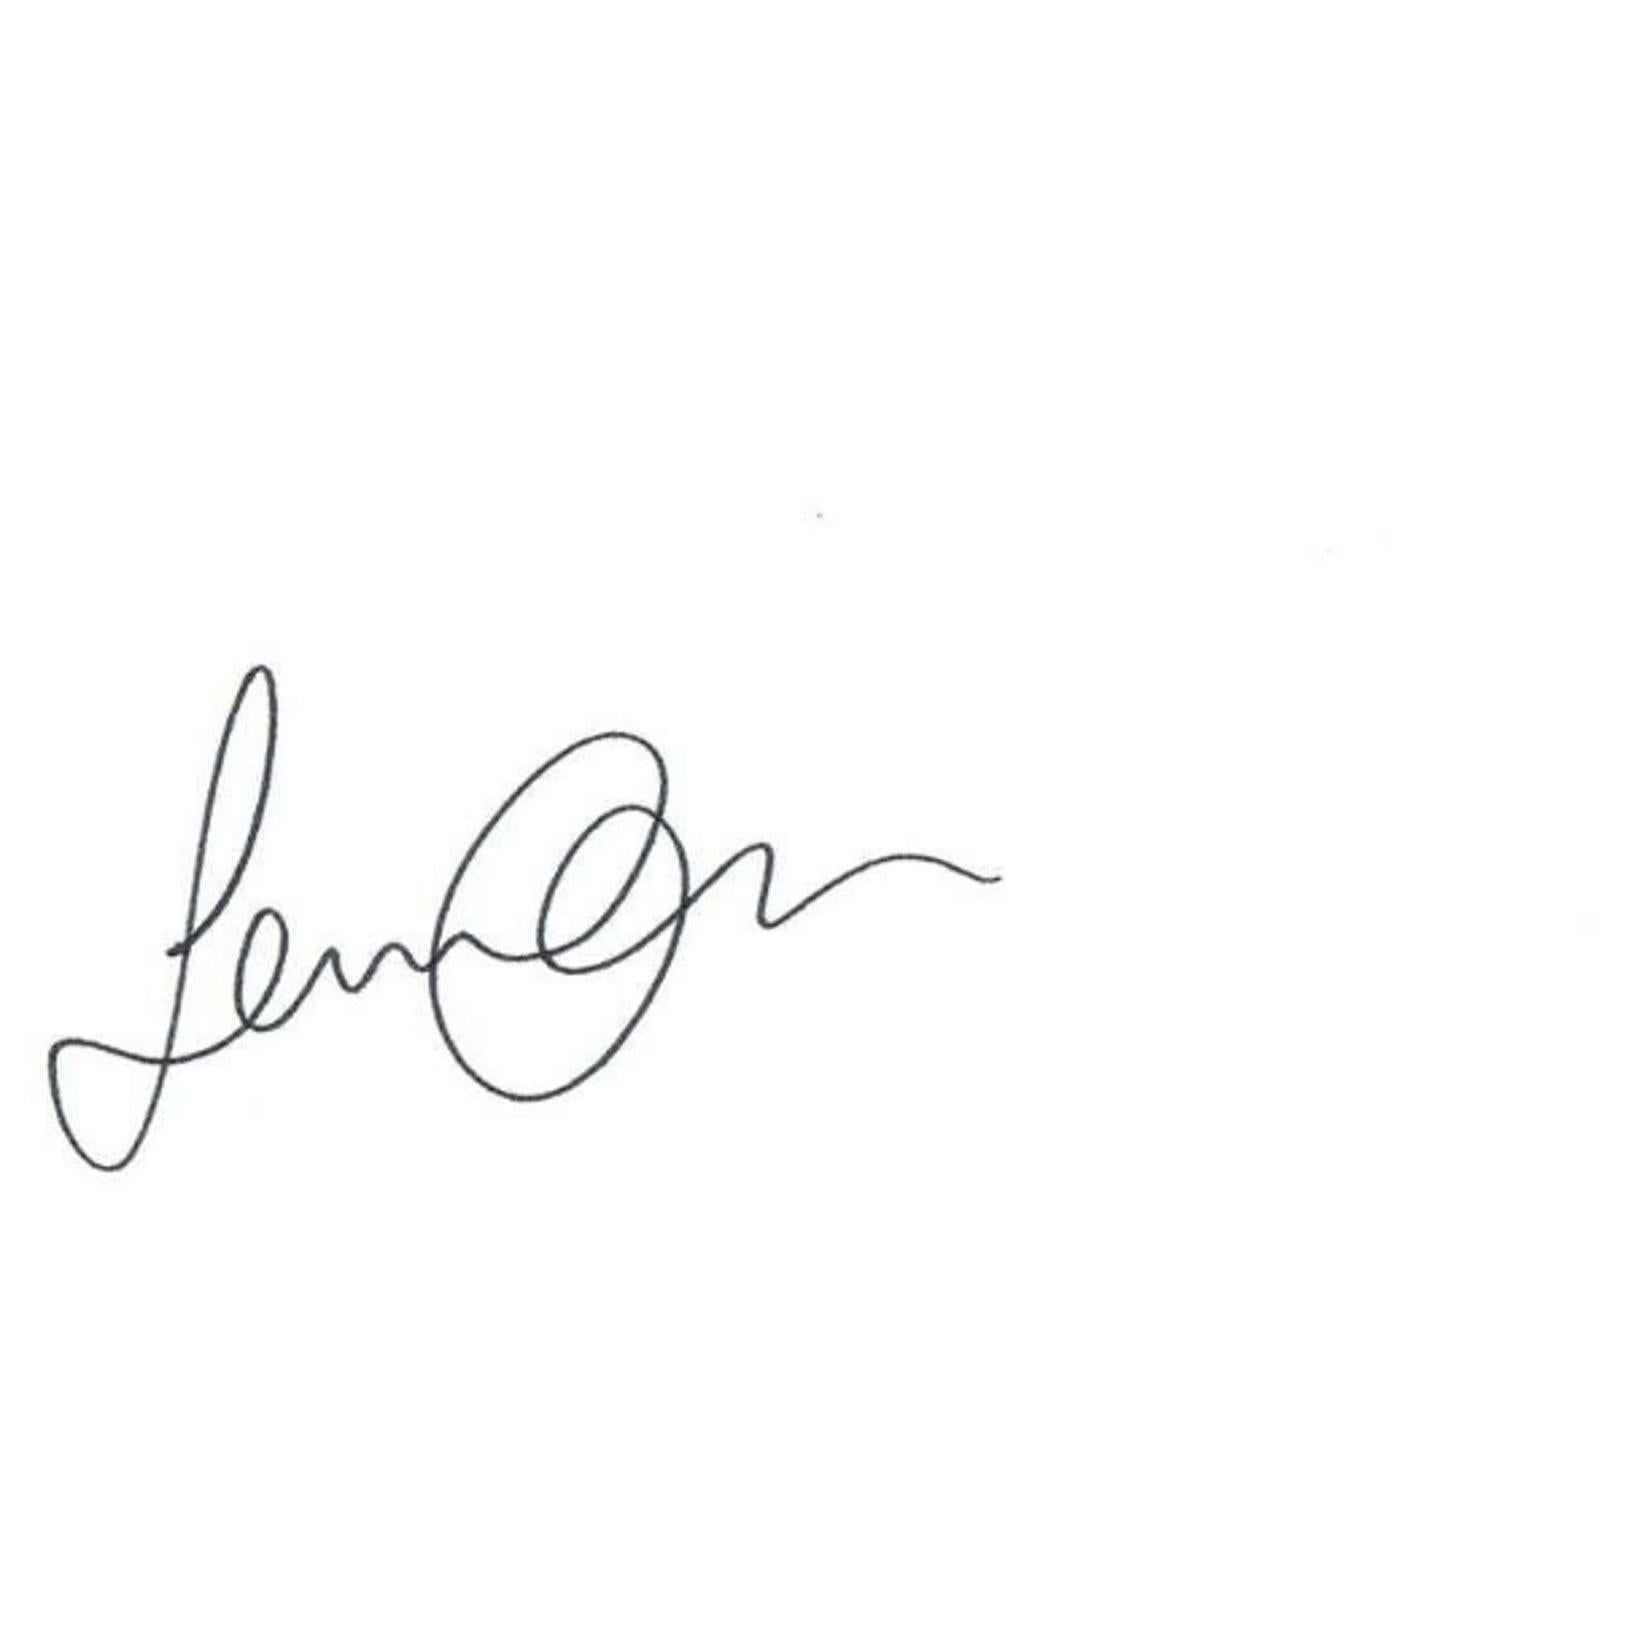 Sean Lennon Autograph